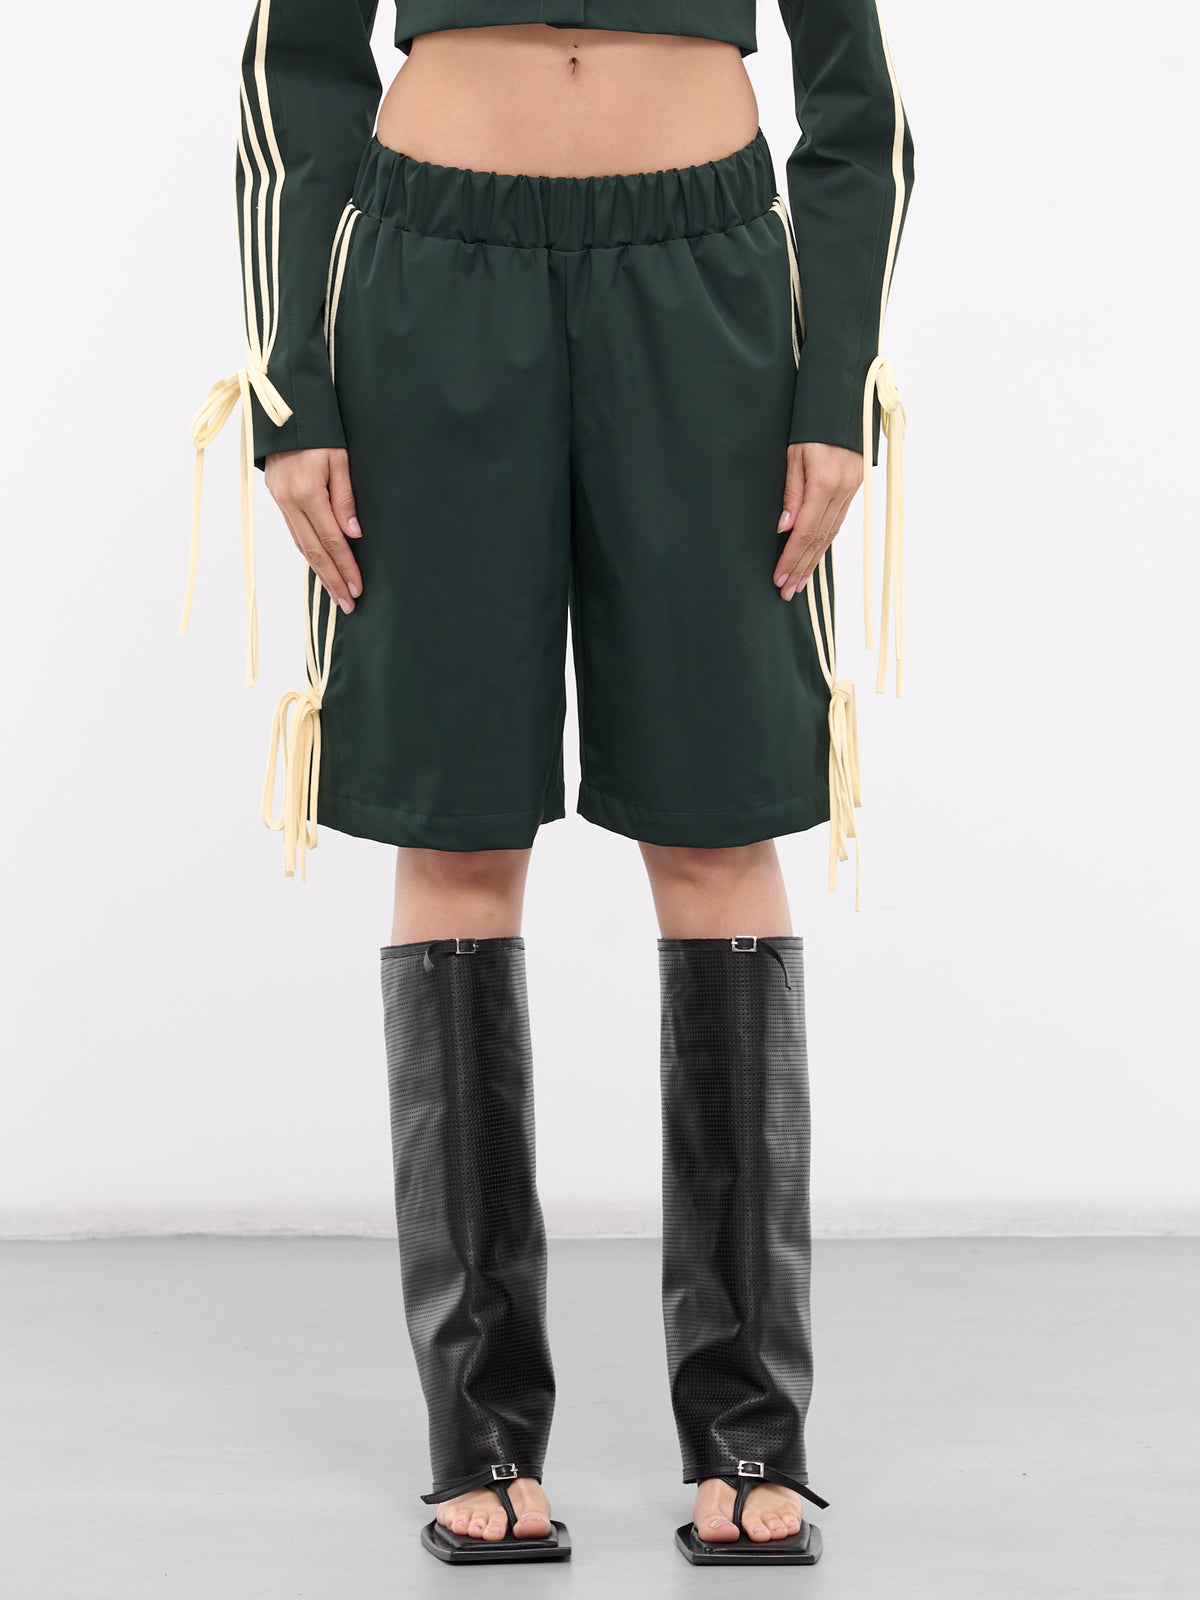 Giada Bow & Stripe Shorts (GDSH03-GIADA-FOREST-GREEN-OFF-)